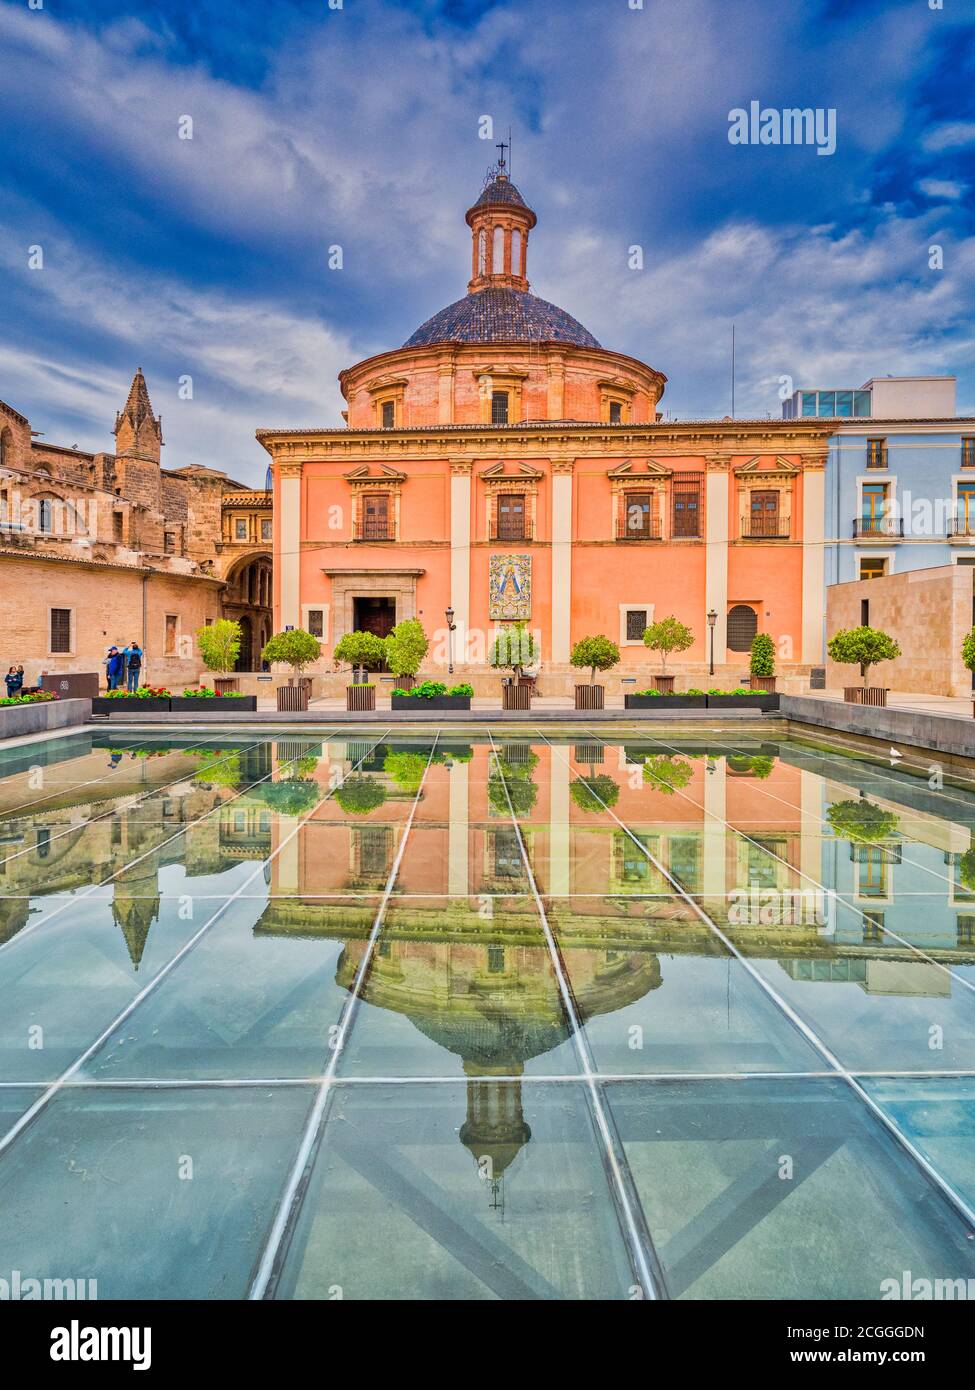 3 mars 2020 : Valence, Espagne - la Basilique de la Virgen de los Desamparados (Basilique de notre-Dame du Forsaken), un sanctuaire pour le saint patron... Banque D'Images